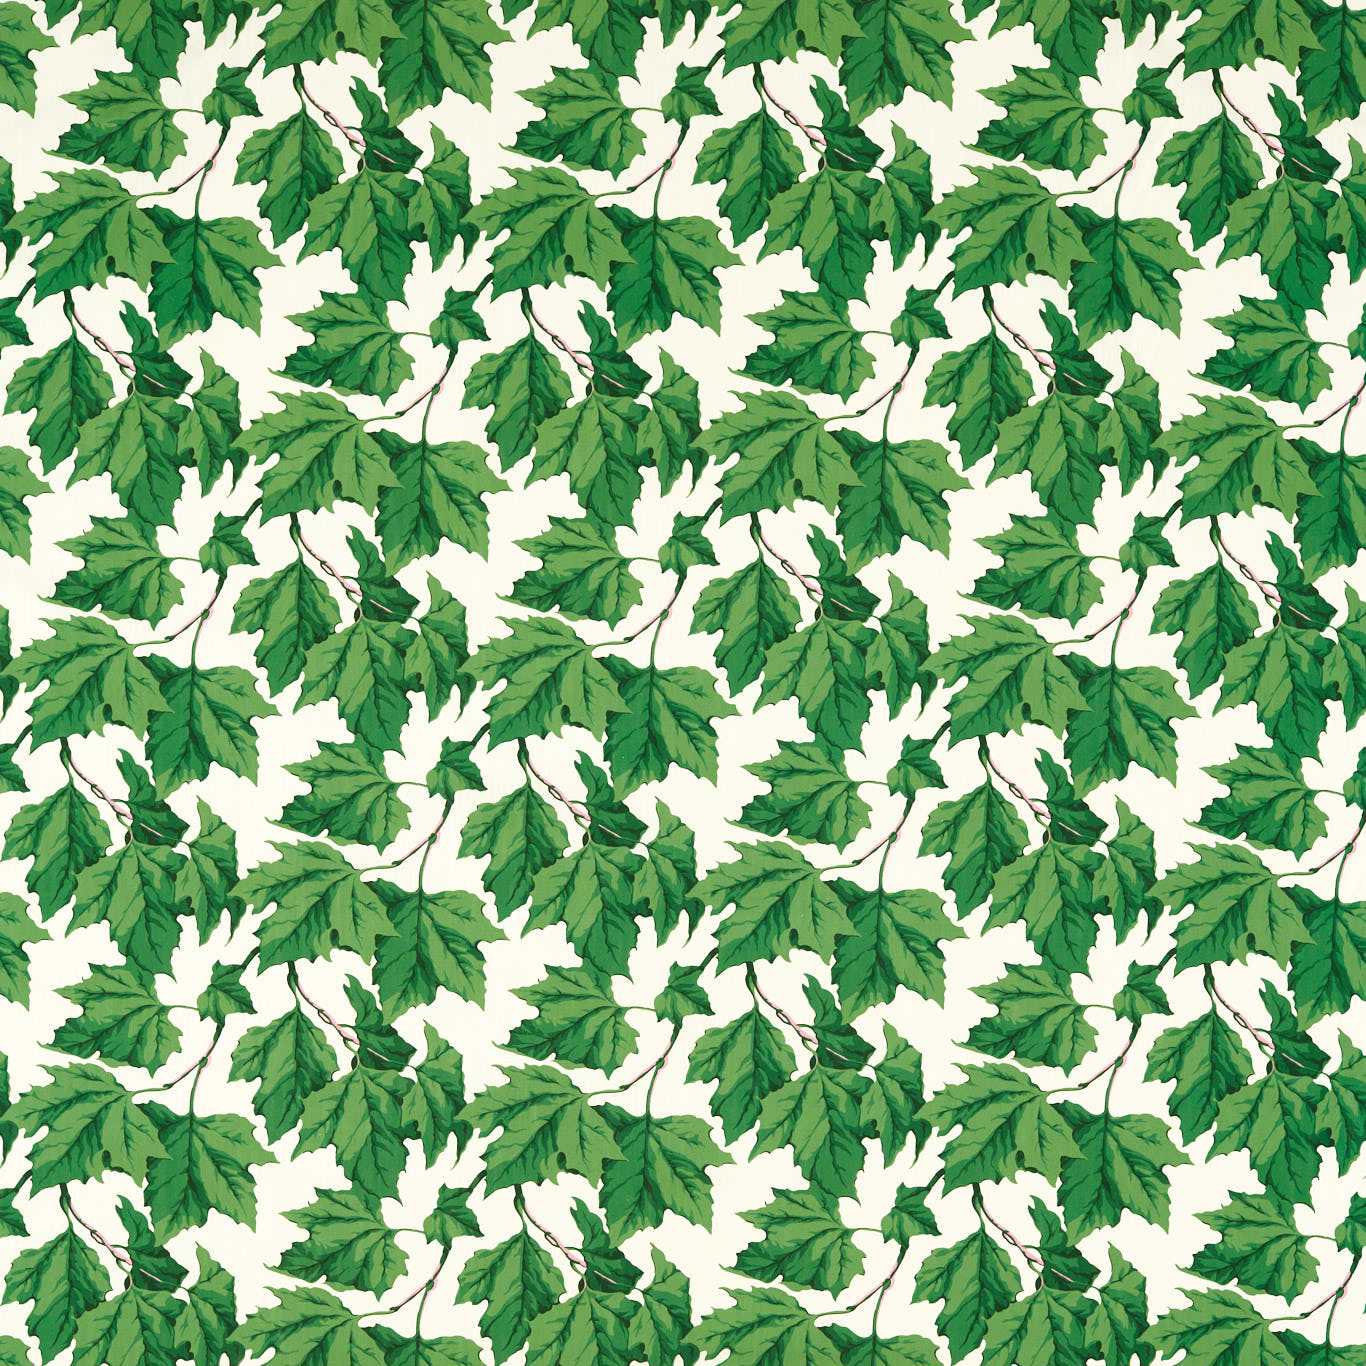 Dappled Leaf Fabric - Emerald